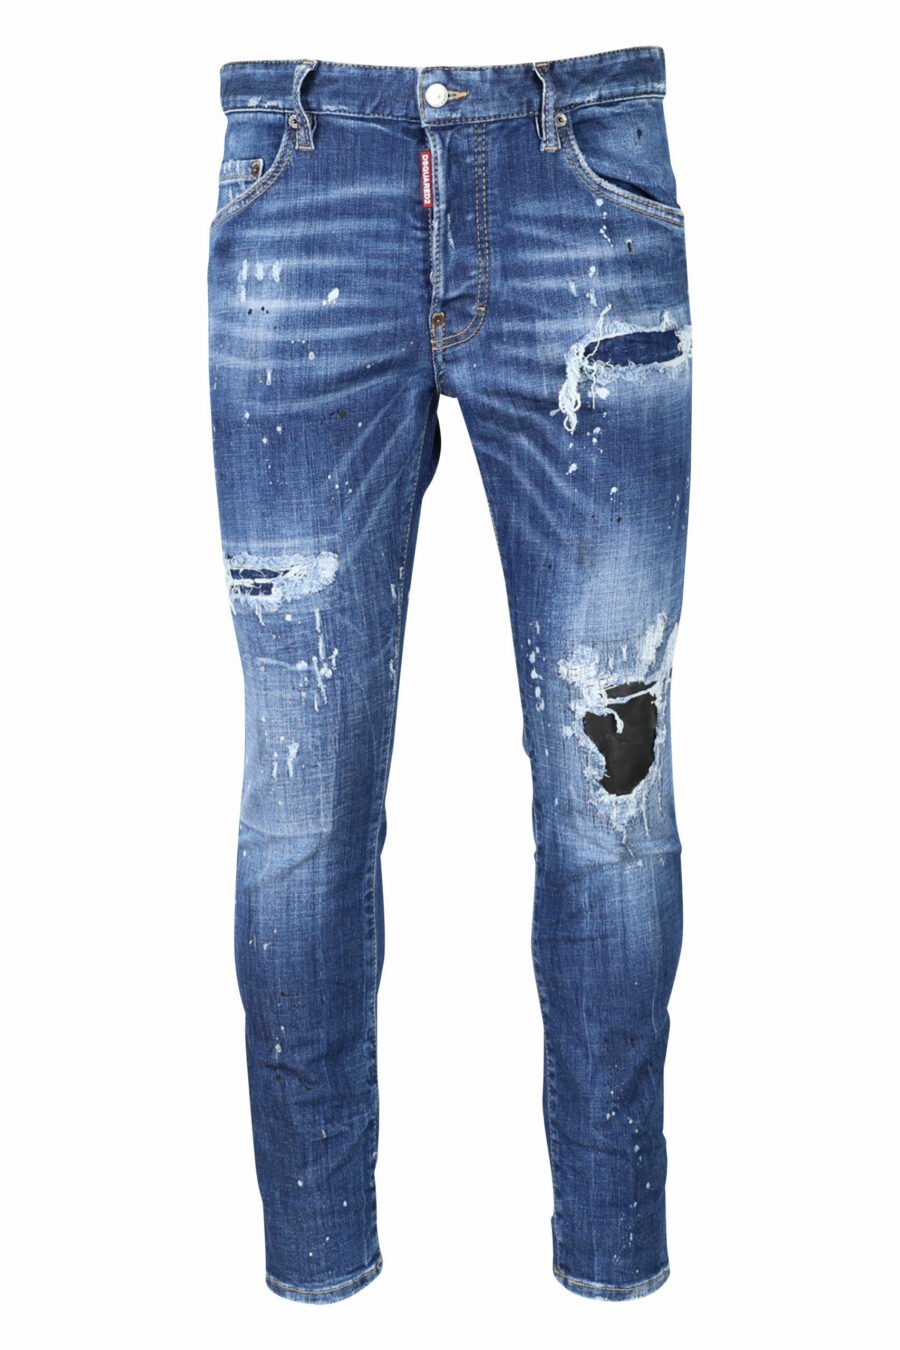 Pantalón vaquero "super twinkey jean" azul desgastado con roto negro - 8054148124328 scaled